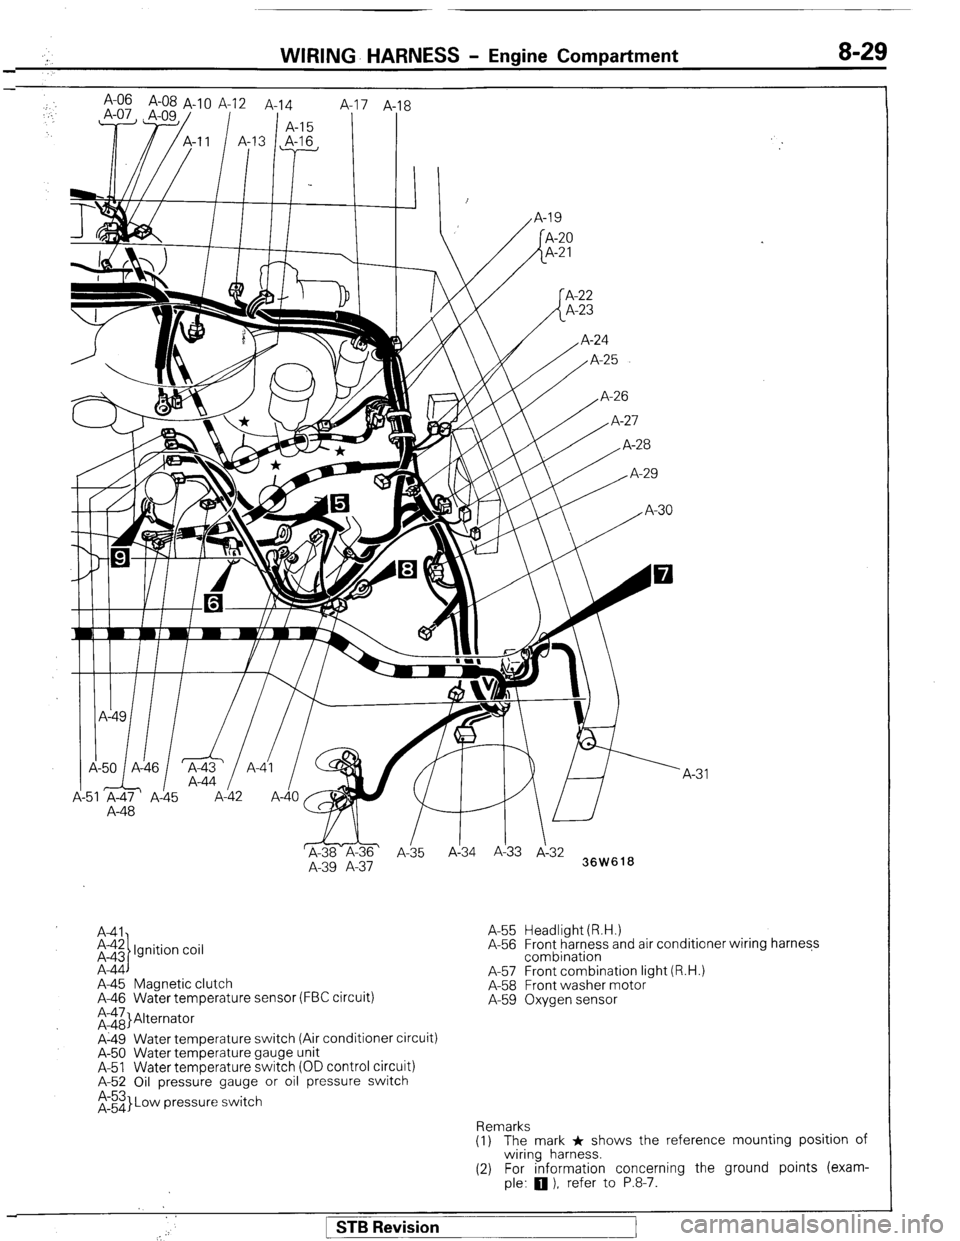 MITSUBISHI MONTERO 1987 1.G Workshop Manual WIRING- HARNESS - Engine Compartment 8-29 
; A-06 A-08 A-1 0 A-12 A-14 
,. 
1 A-15 8 
I I 
,I I I, I / 
A-48 
WI 
&-ii& ’ 
A-35 Ai34 A!33 J-3: 
A-39 A-37 
36W618 
A41 
i-$ Ignition coil 
A-44 
A-45 